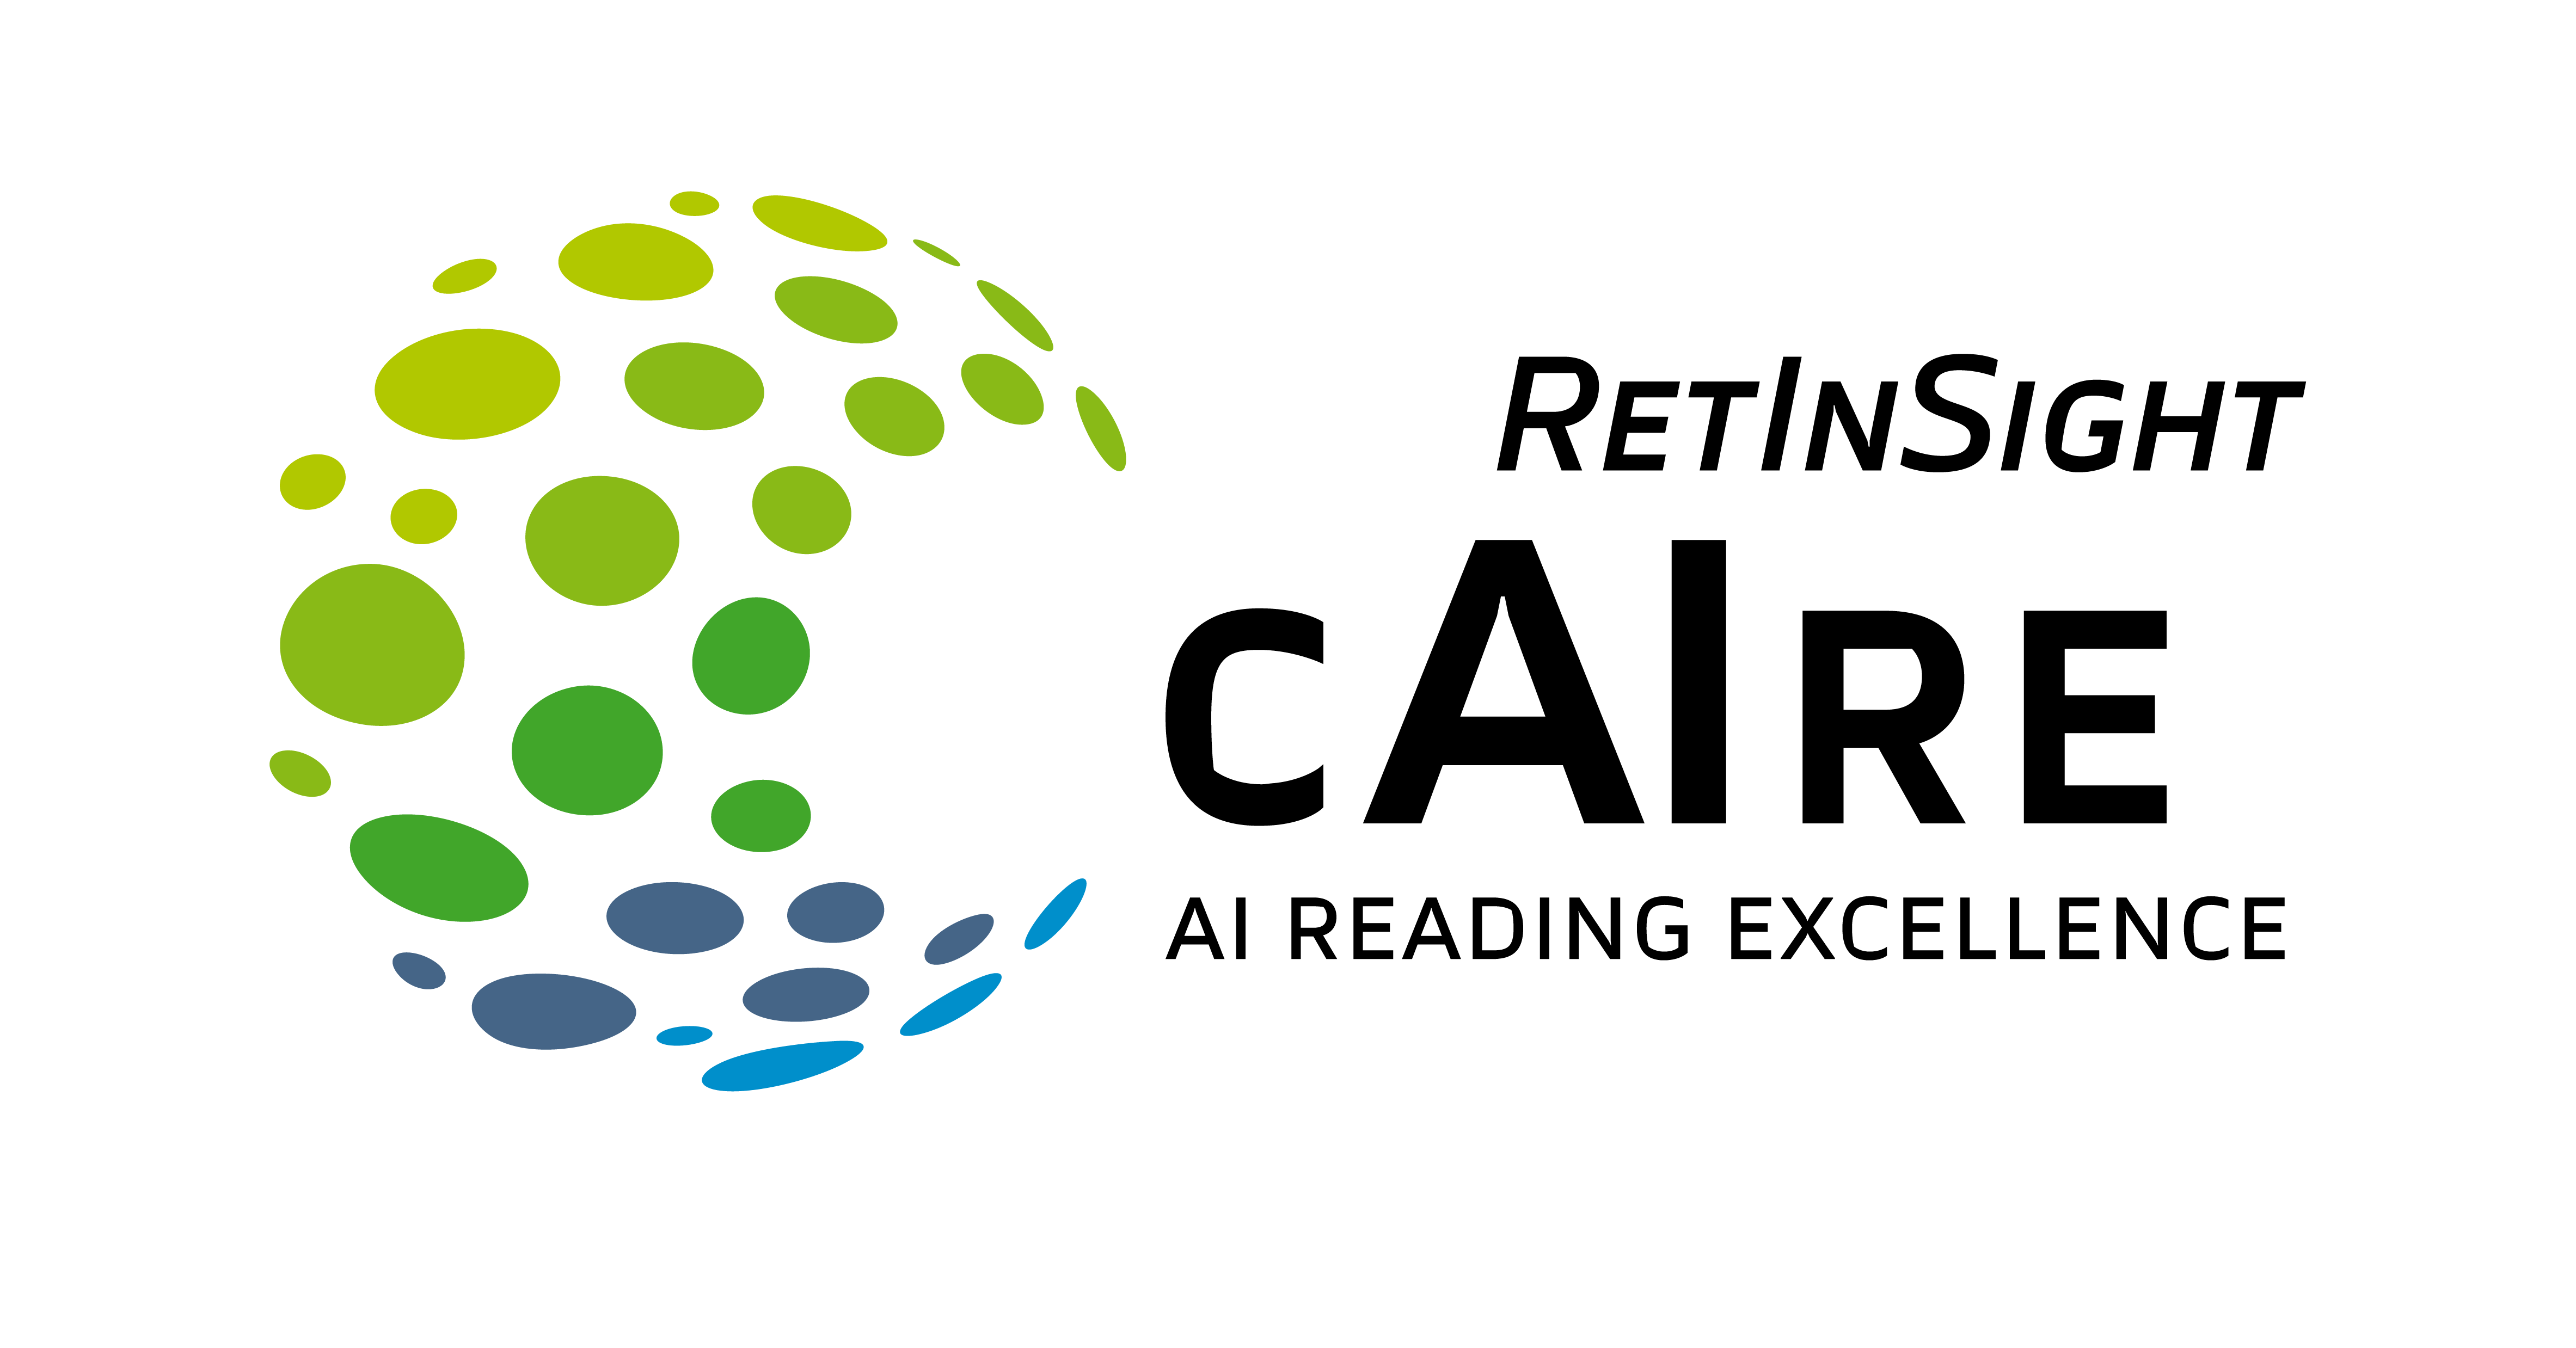 RetInsight-Logo-Caire-RGB-positiv-RZ